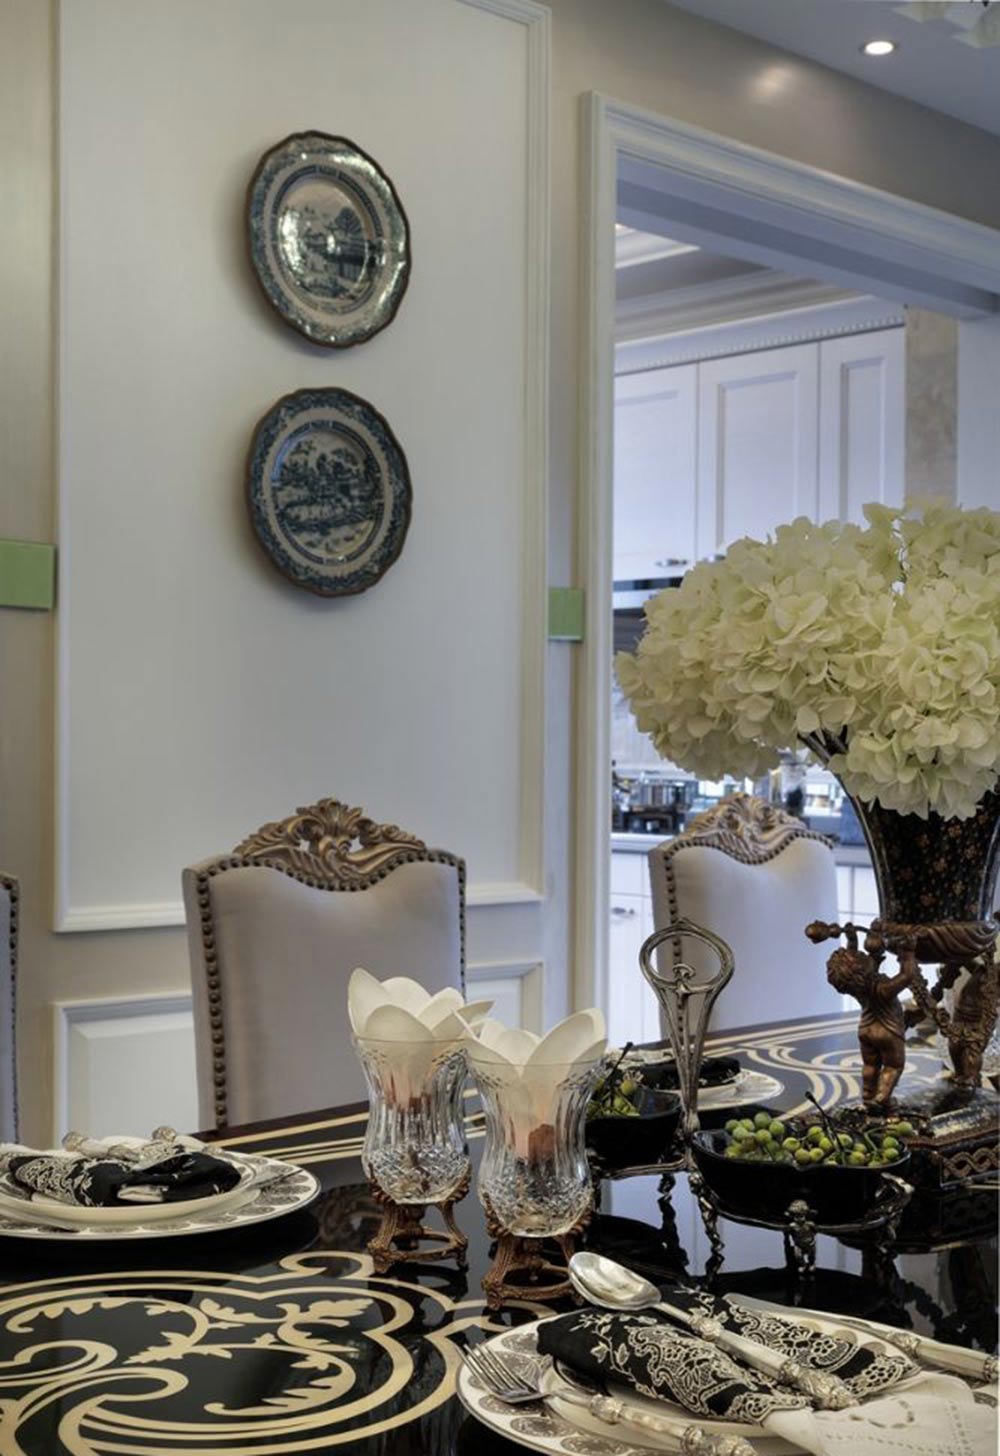 黑色祥云图案装饰大理石餐桌，显得深沉高贵。玻璃酒杯里的白色花朵让就餐环境不会过于冷漠。